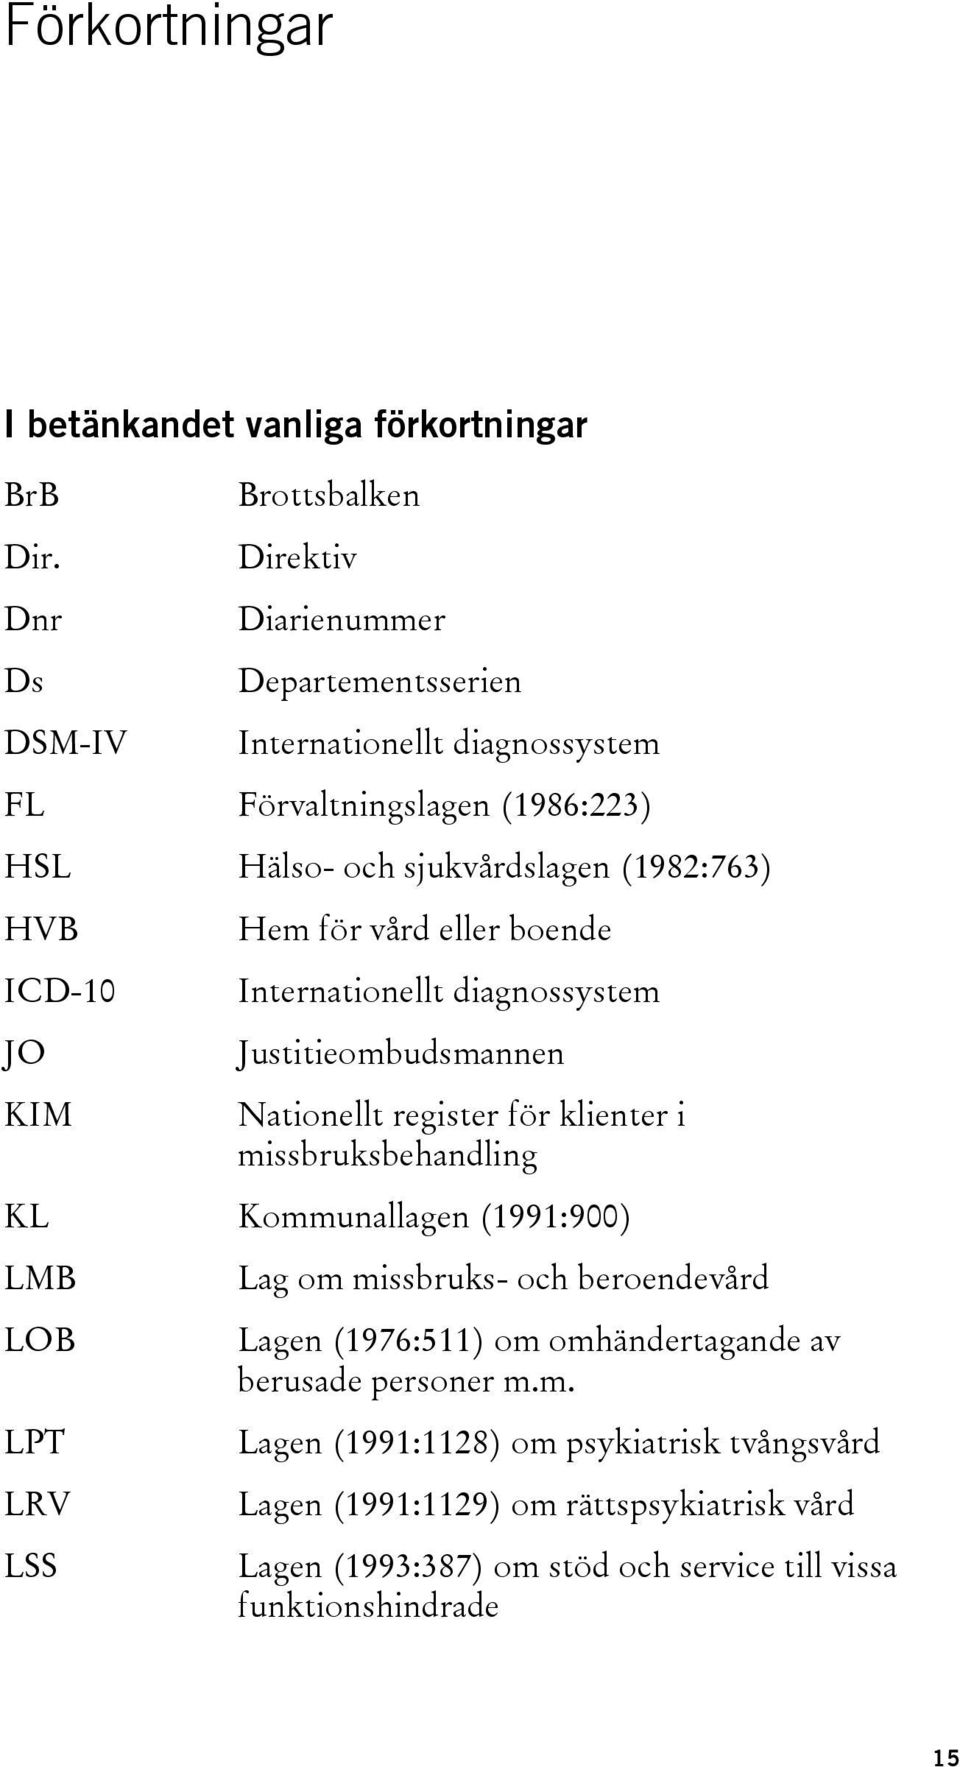 (1982:763) HVB ICD-10 JO KIM Hem för vård eller boende Internationellt diagnossystem Justitieombudsmannen Nationellt register för klienter i missbruksbehandling KL